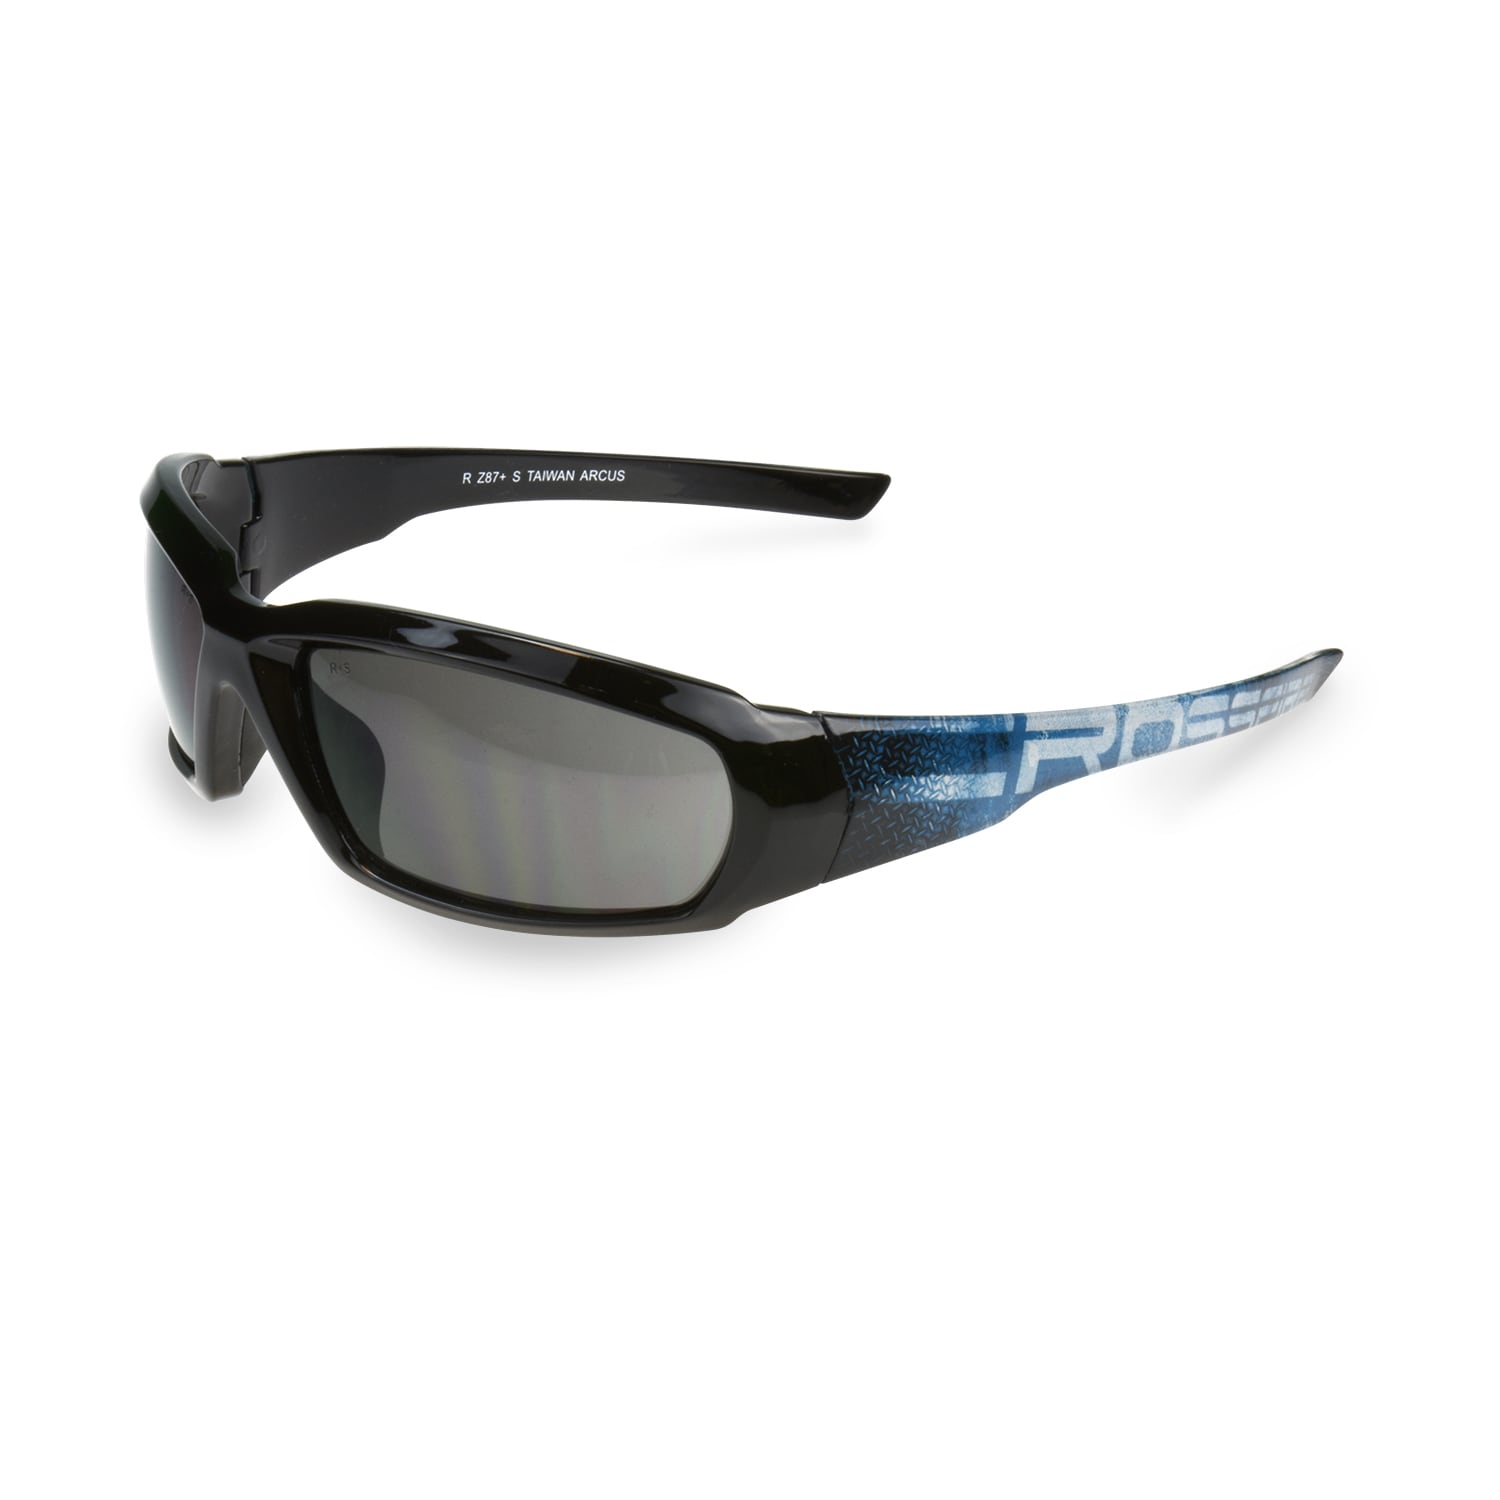 Crossfire 3113 Og3 Black/Smoke Safety Glasses